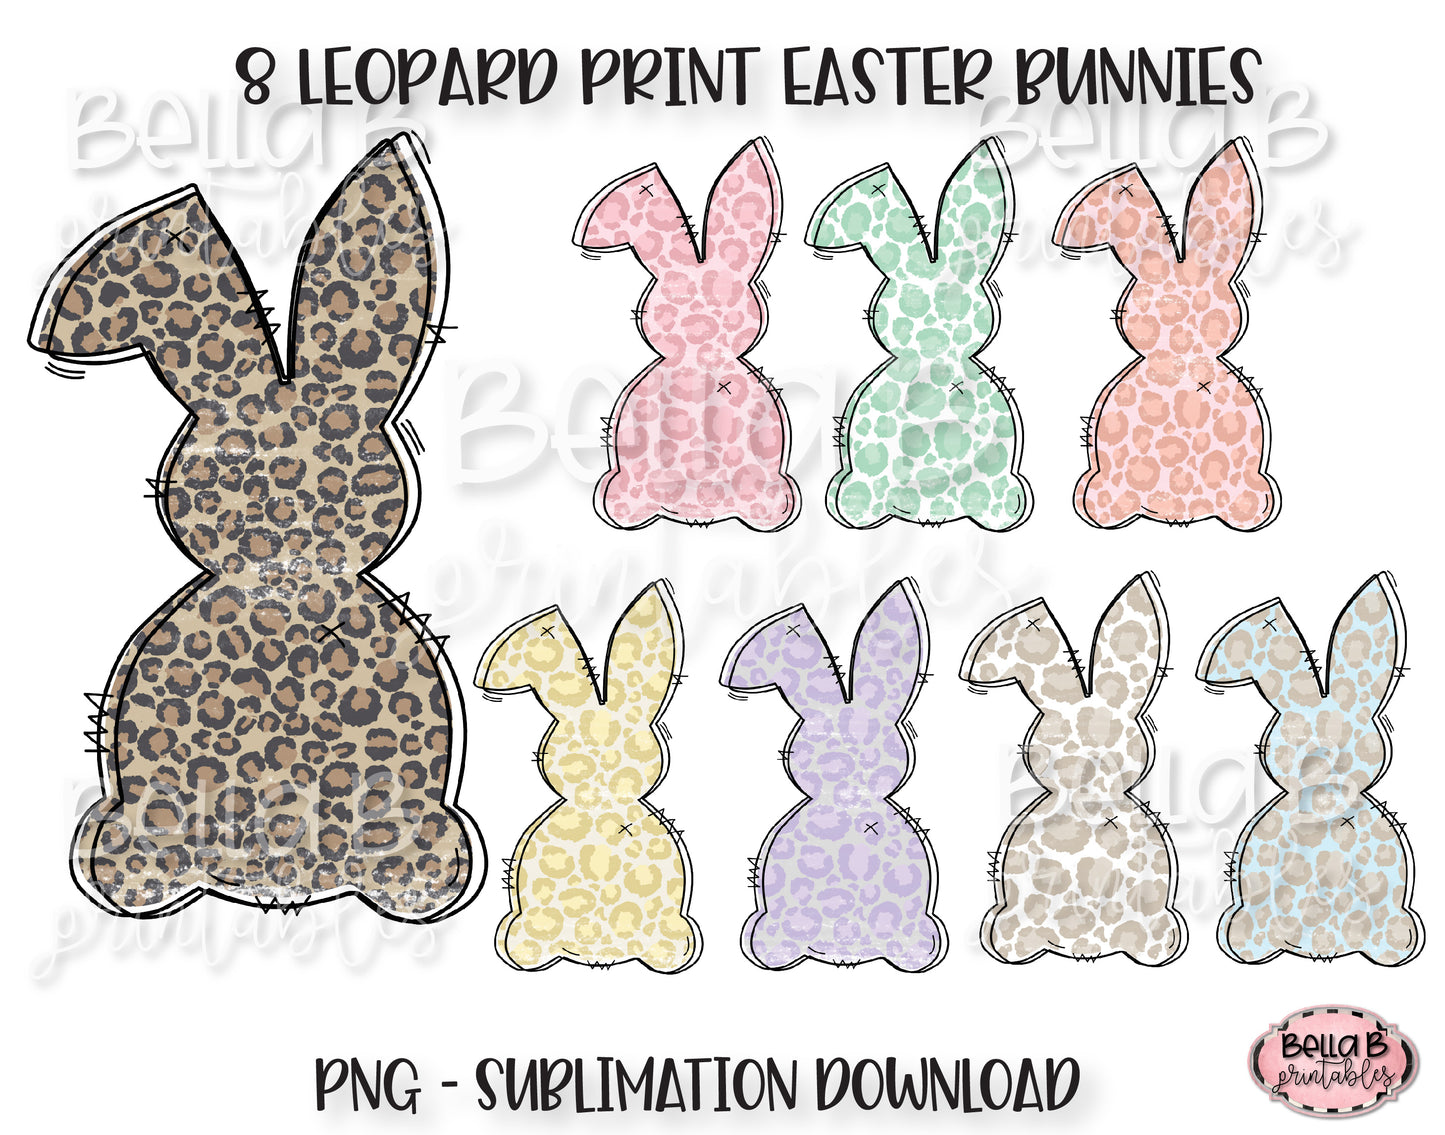 Leopard Print Easter Bunny Sublimation Elements Bundle